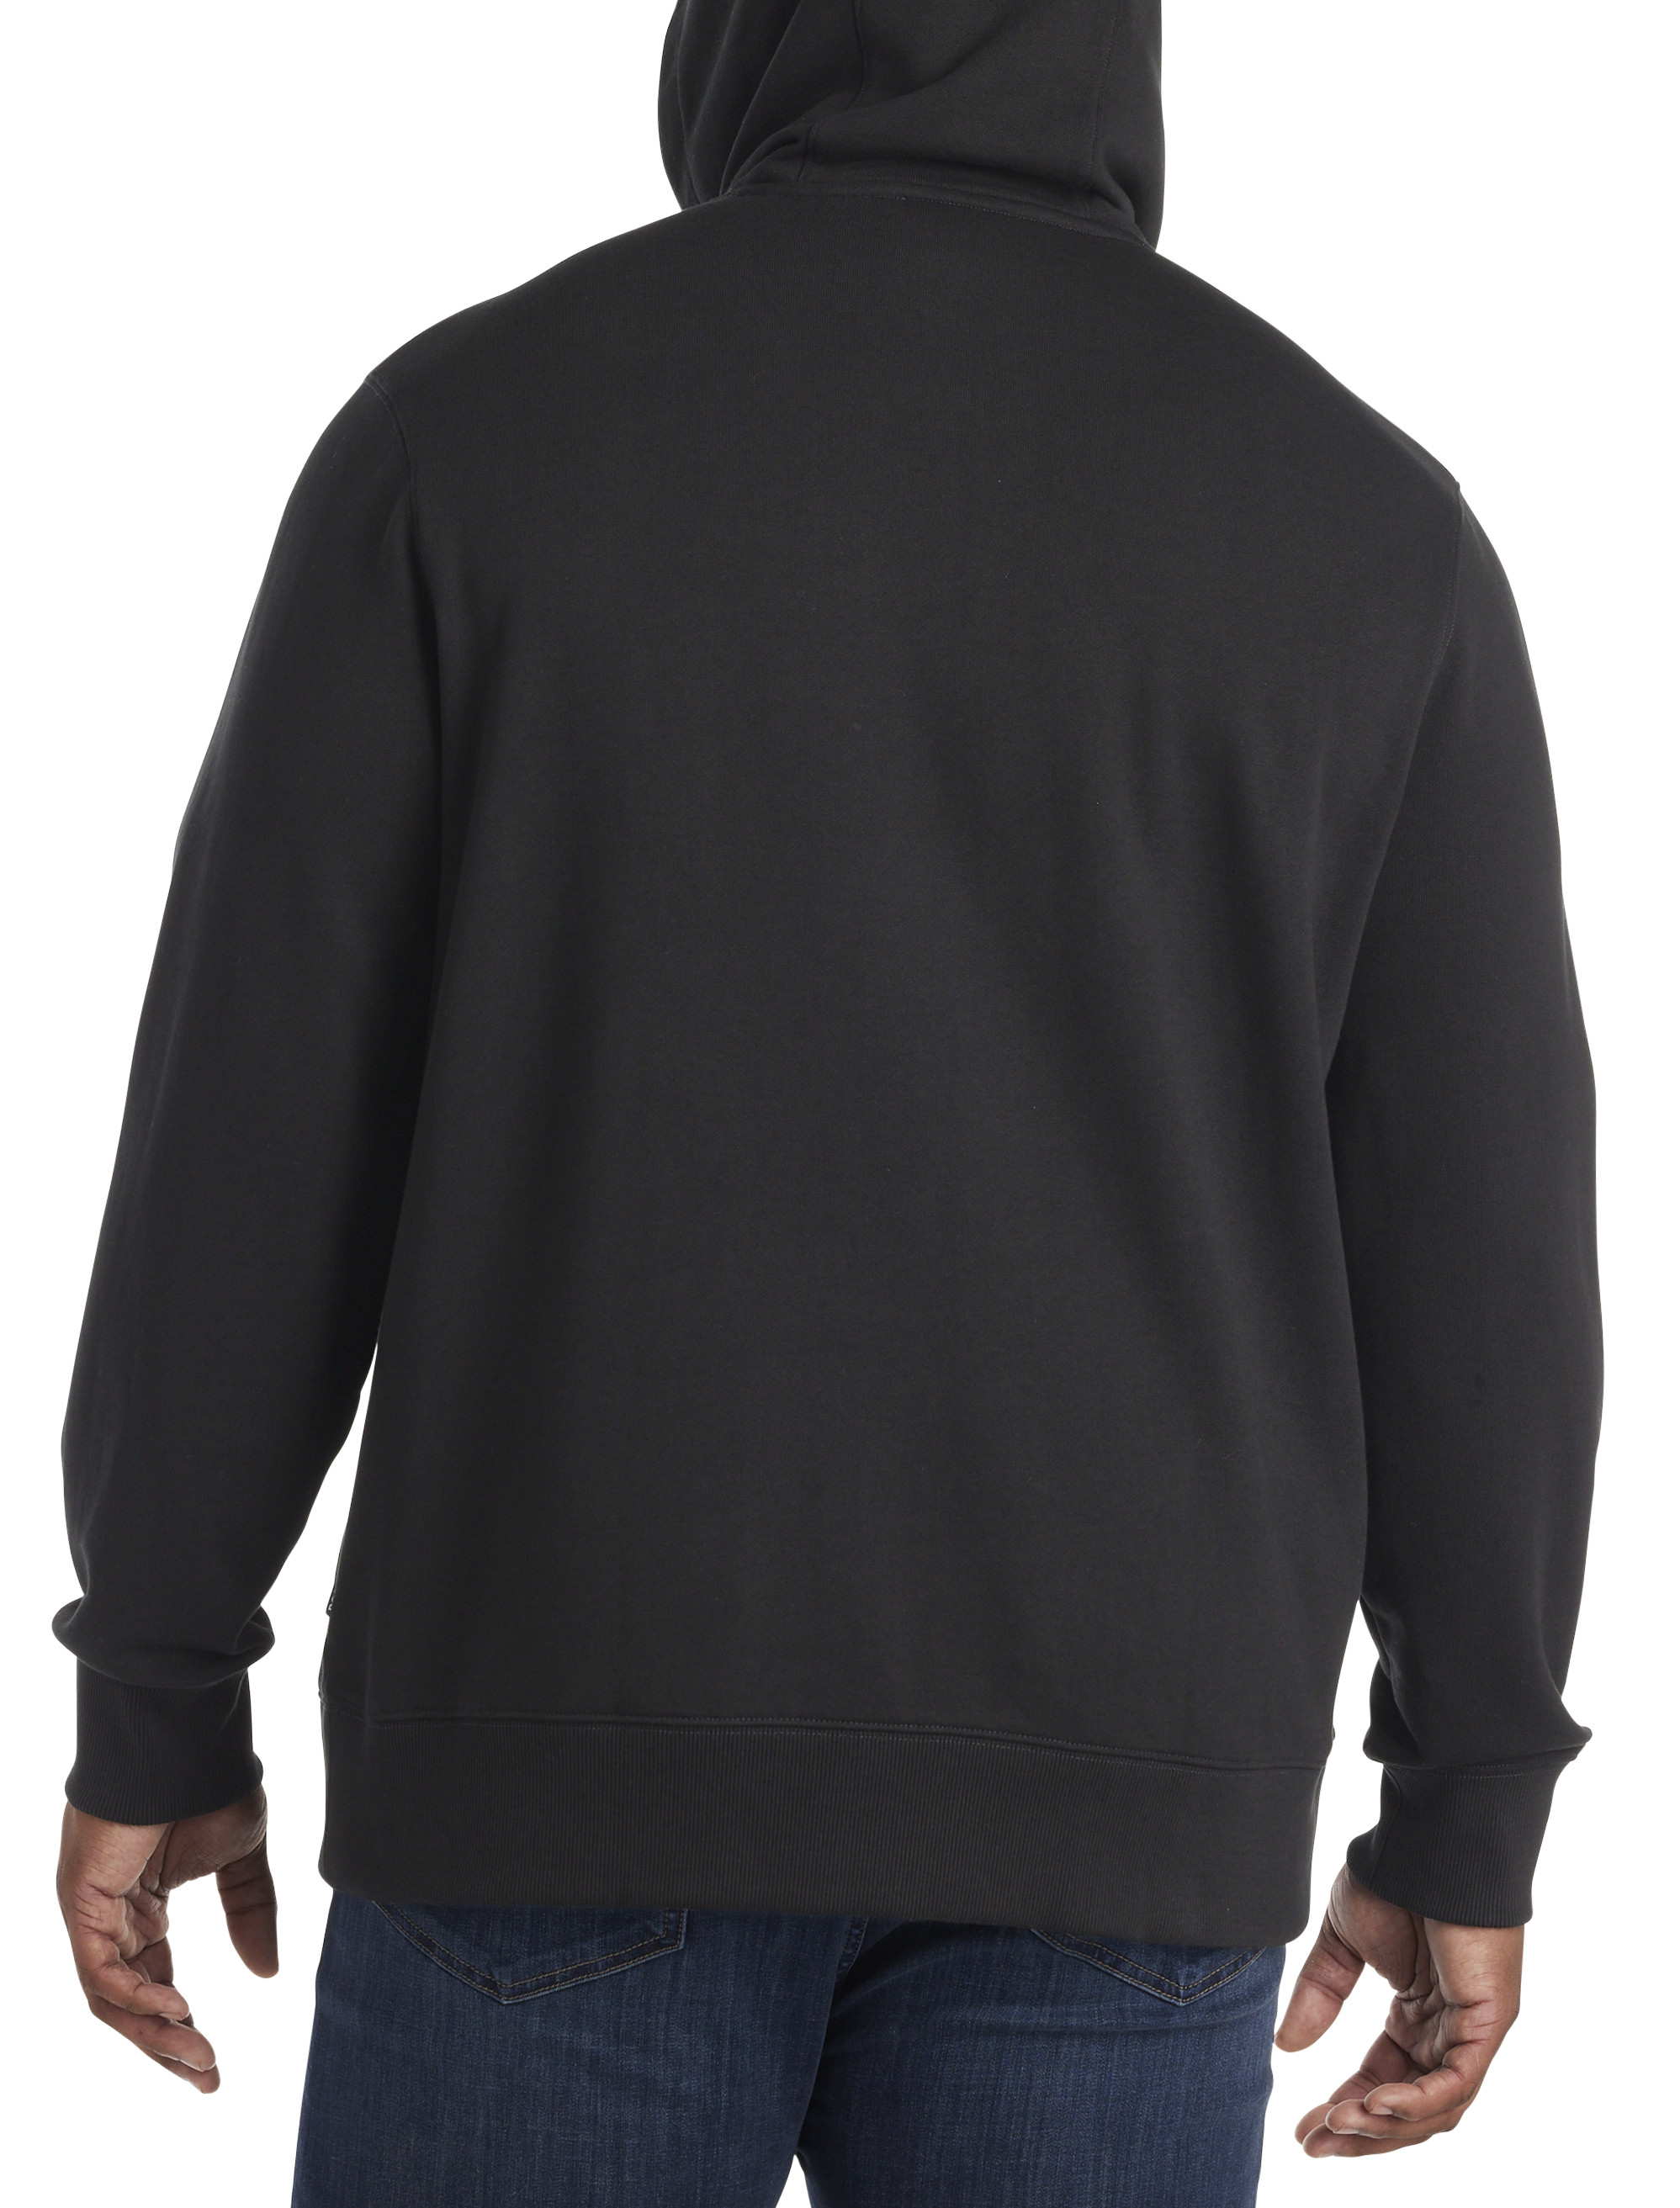 MmF - Men's Sweatshirt Full-Zip Pullover, up to Men Size 5XL